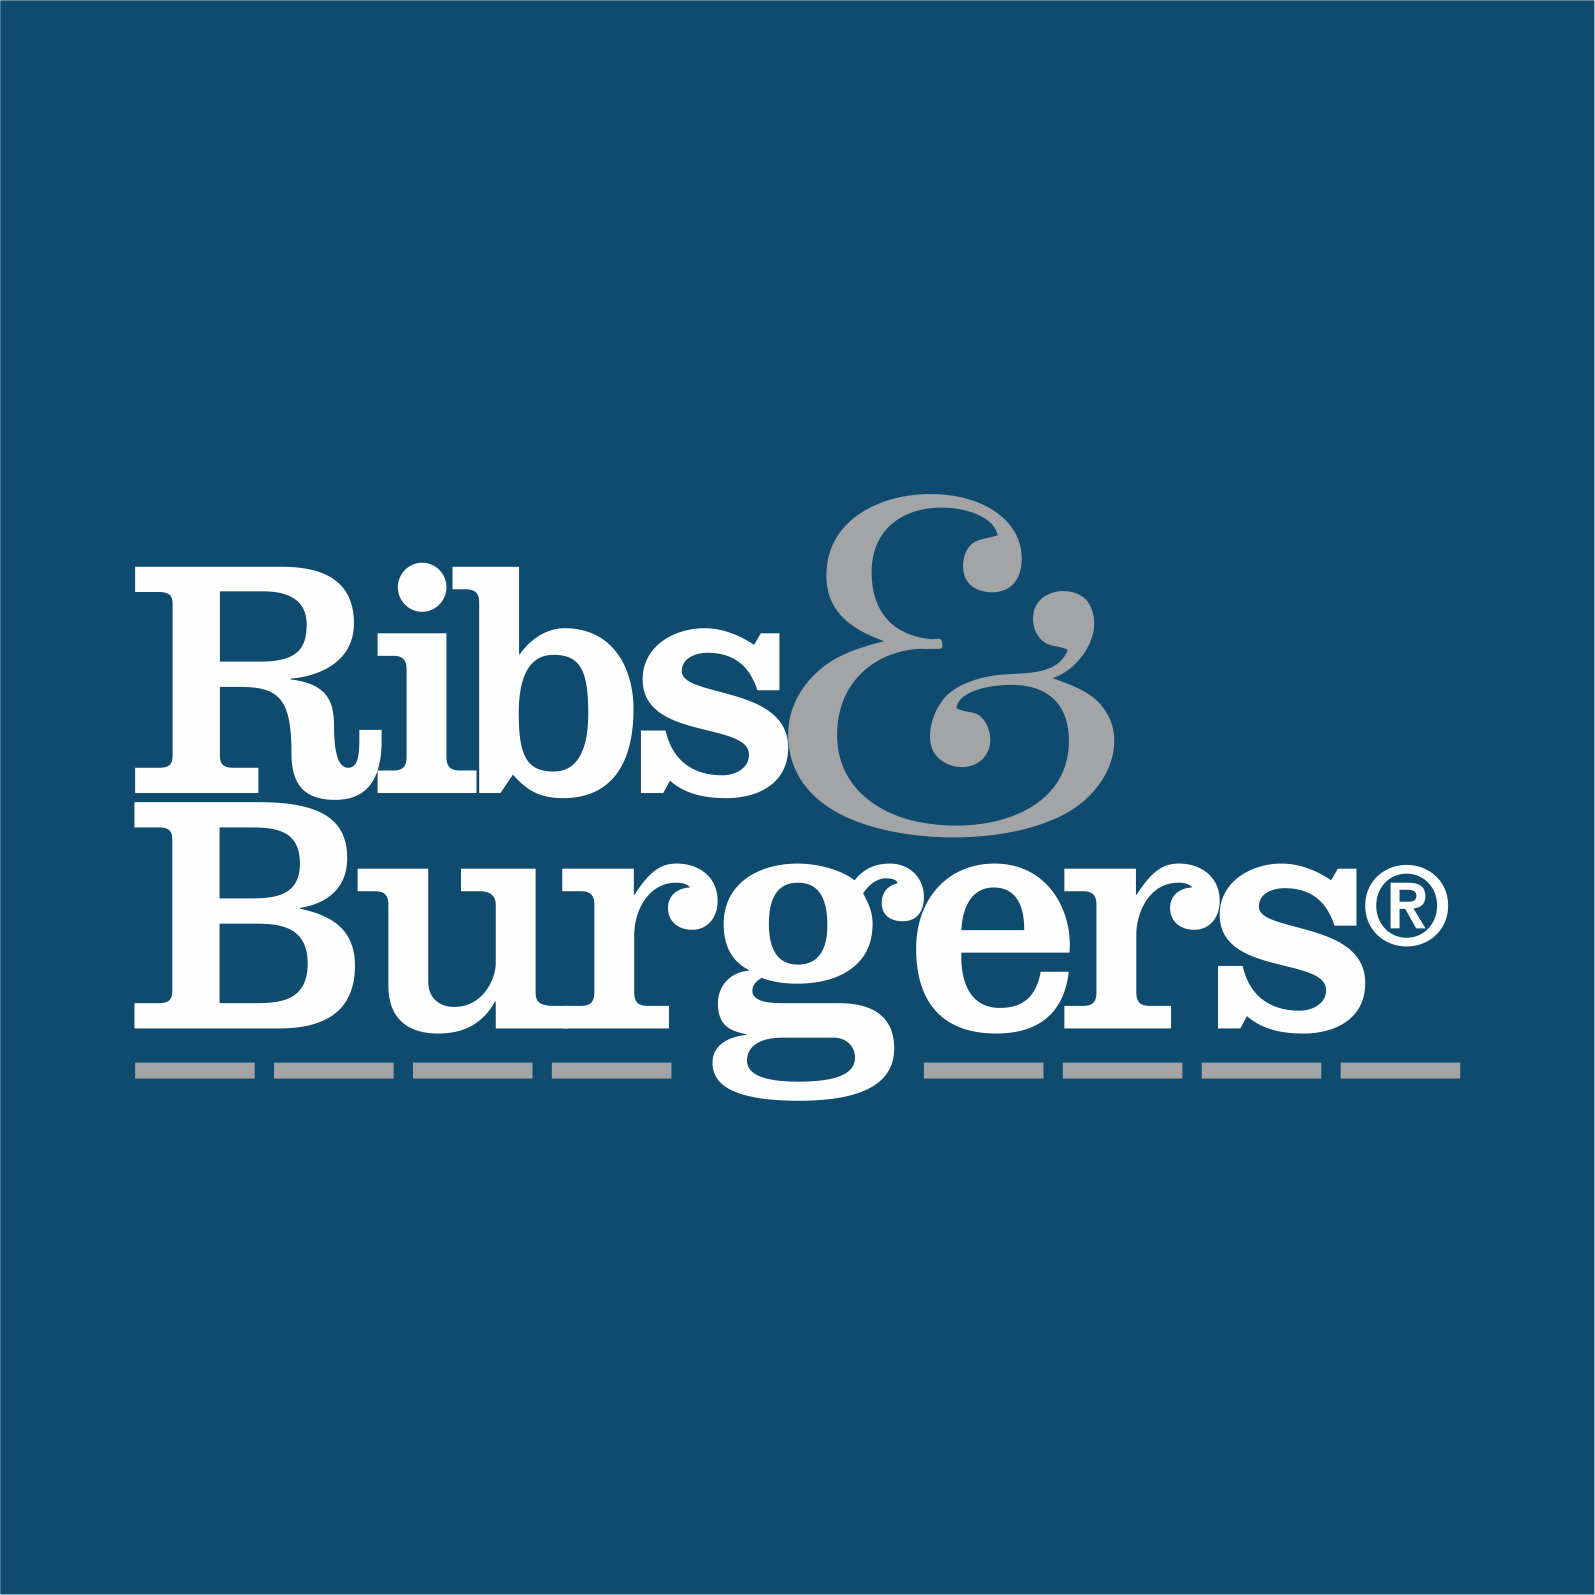 Ribs & Burgers Hawthorn - Hawthorn, VIC 3122 - (03) 9818 8142 | ShowMeLocal.com